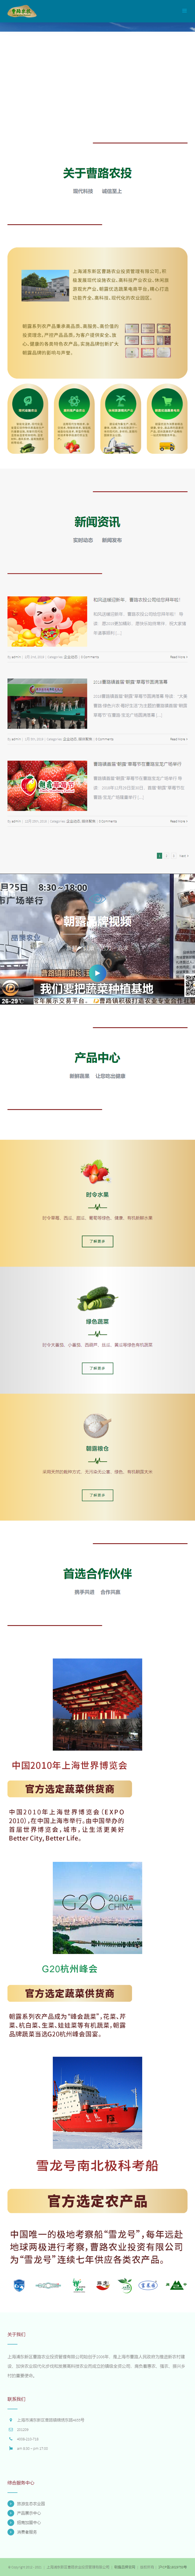 上海浦东新区曹路农业投资管理有限公司网站案例